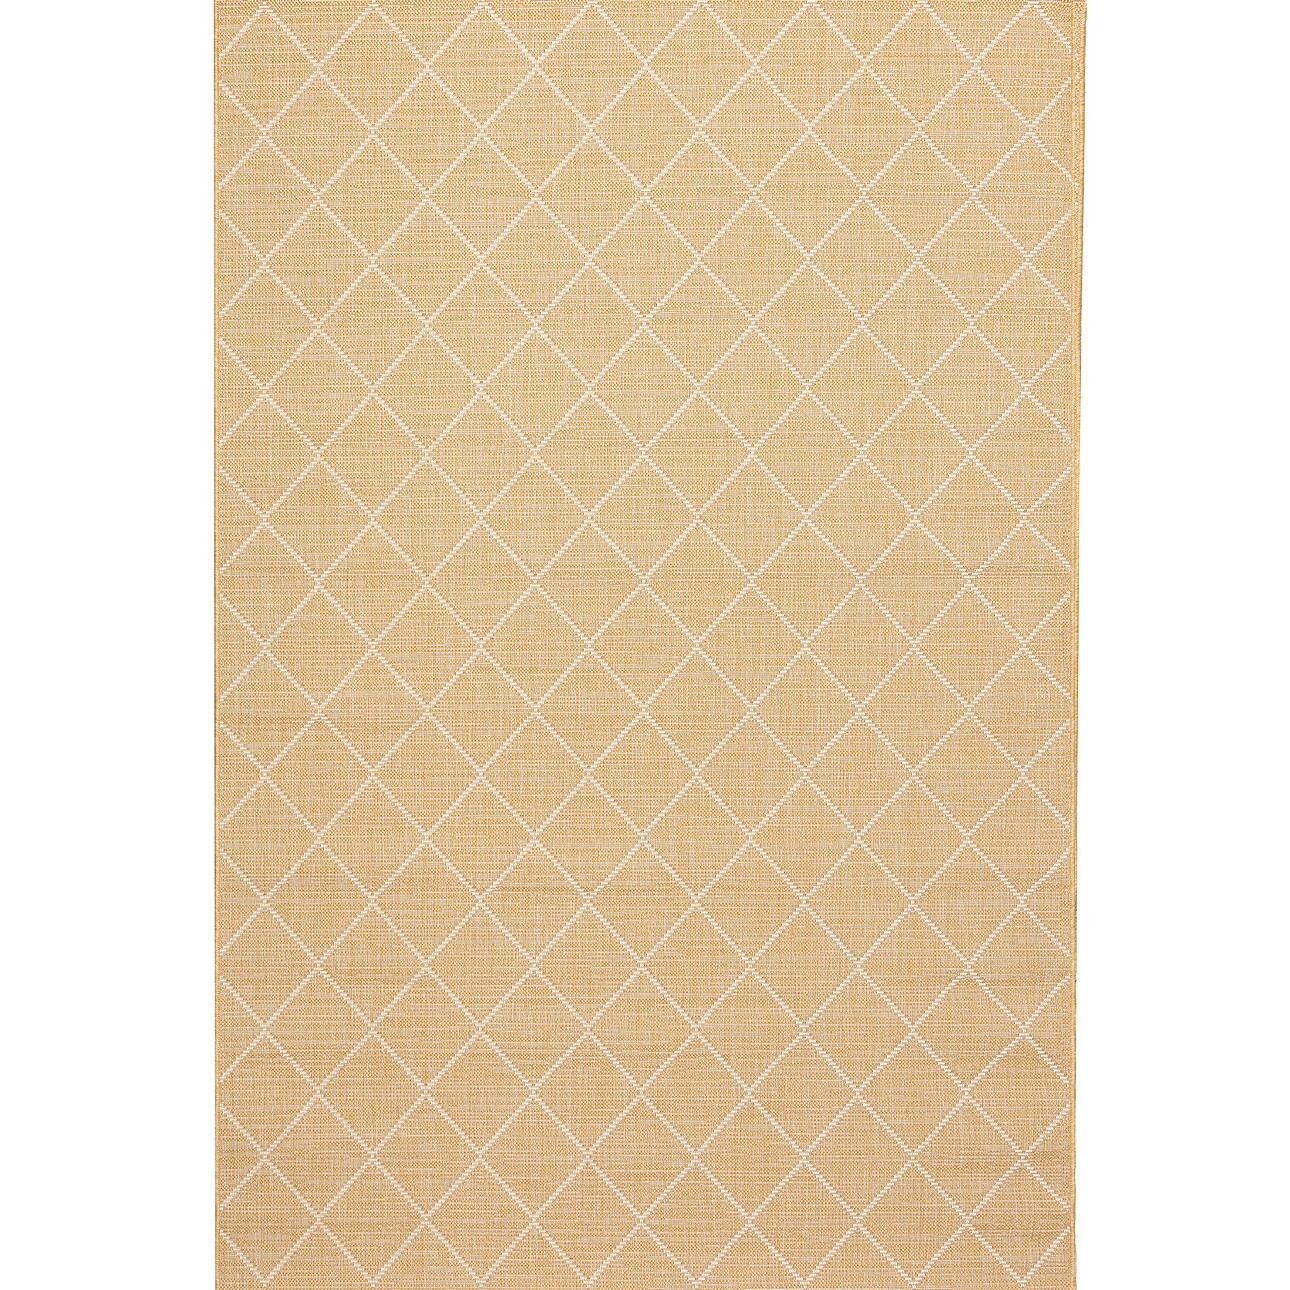 Teppich Lineo honey gold/snow white 160x230cm, 160 x 230 cm günstig online kaufen